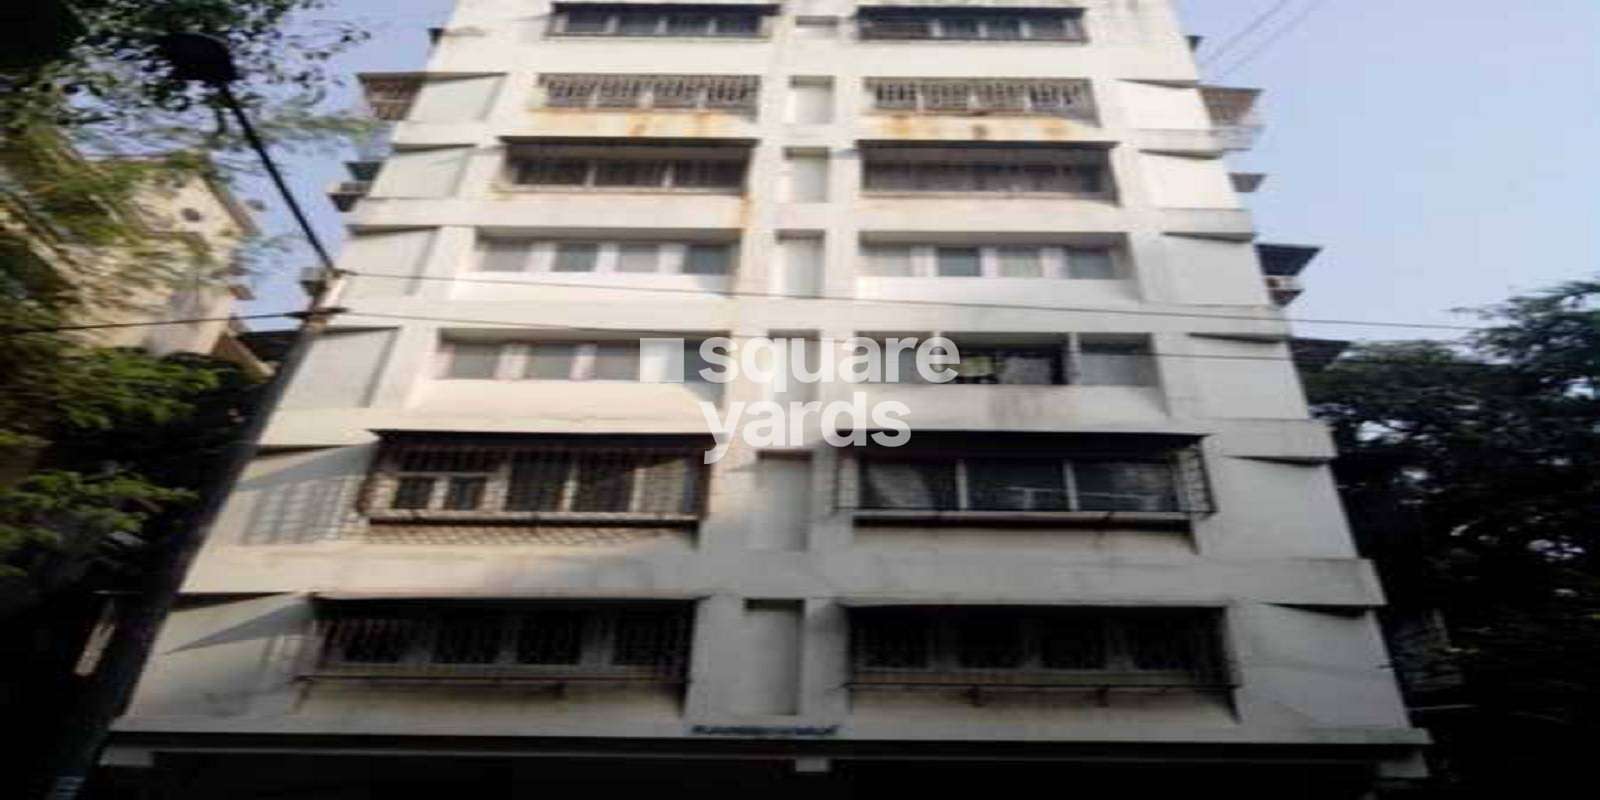 Ram Bhuvan Apartment Cover Image